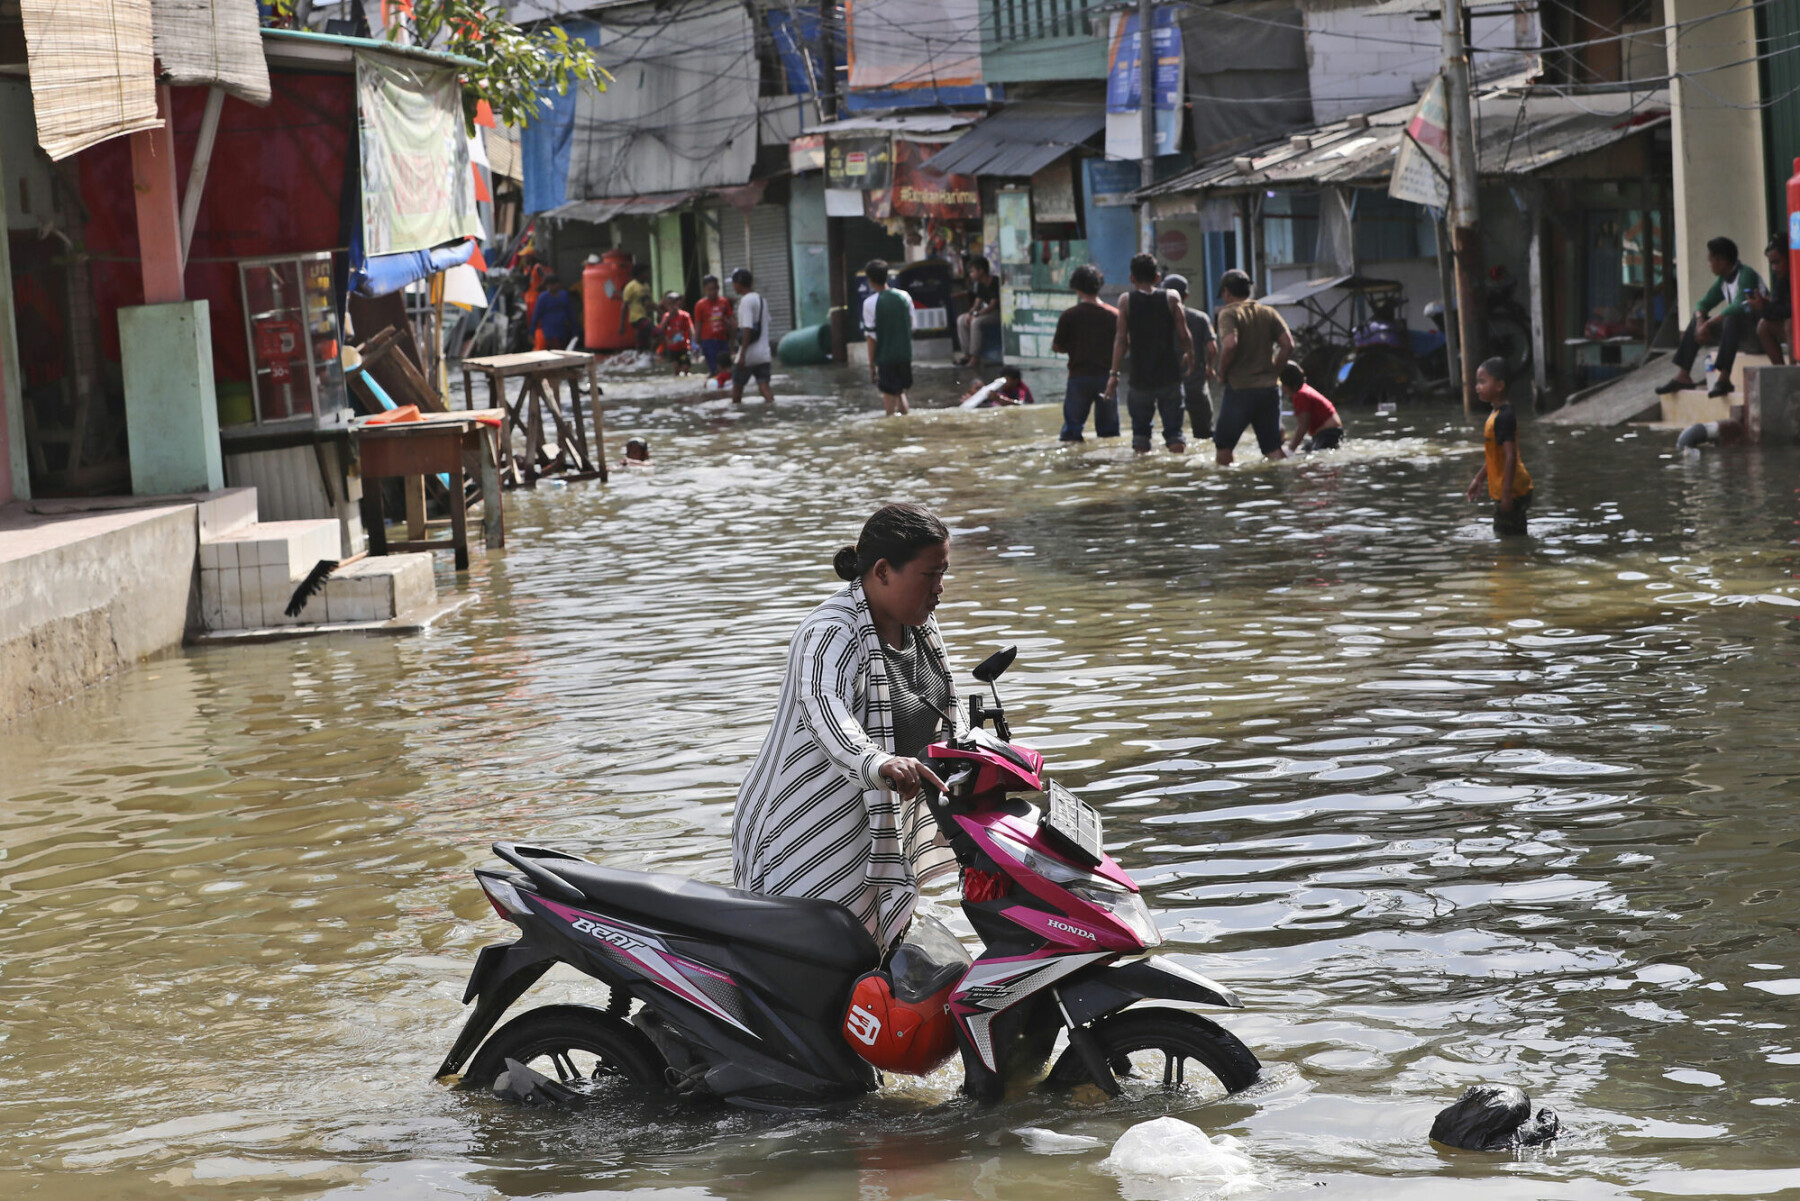 Jakarta i Indonesia ble hardt rammet av flom i november 2021. Byen synker med rundt ti centimenter i året på grunn av for stort uttak av grunnvann, noe som forverrer problemene med det økende havnivået, ifølge nyhetsbyrået AP.